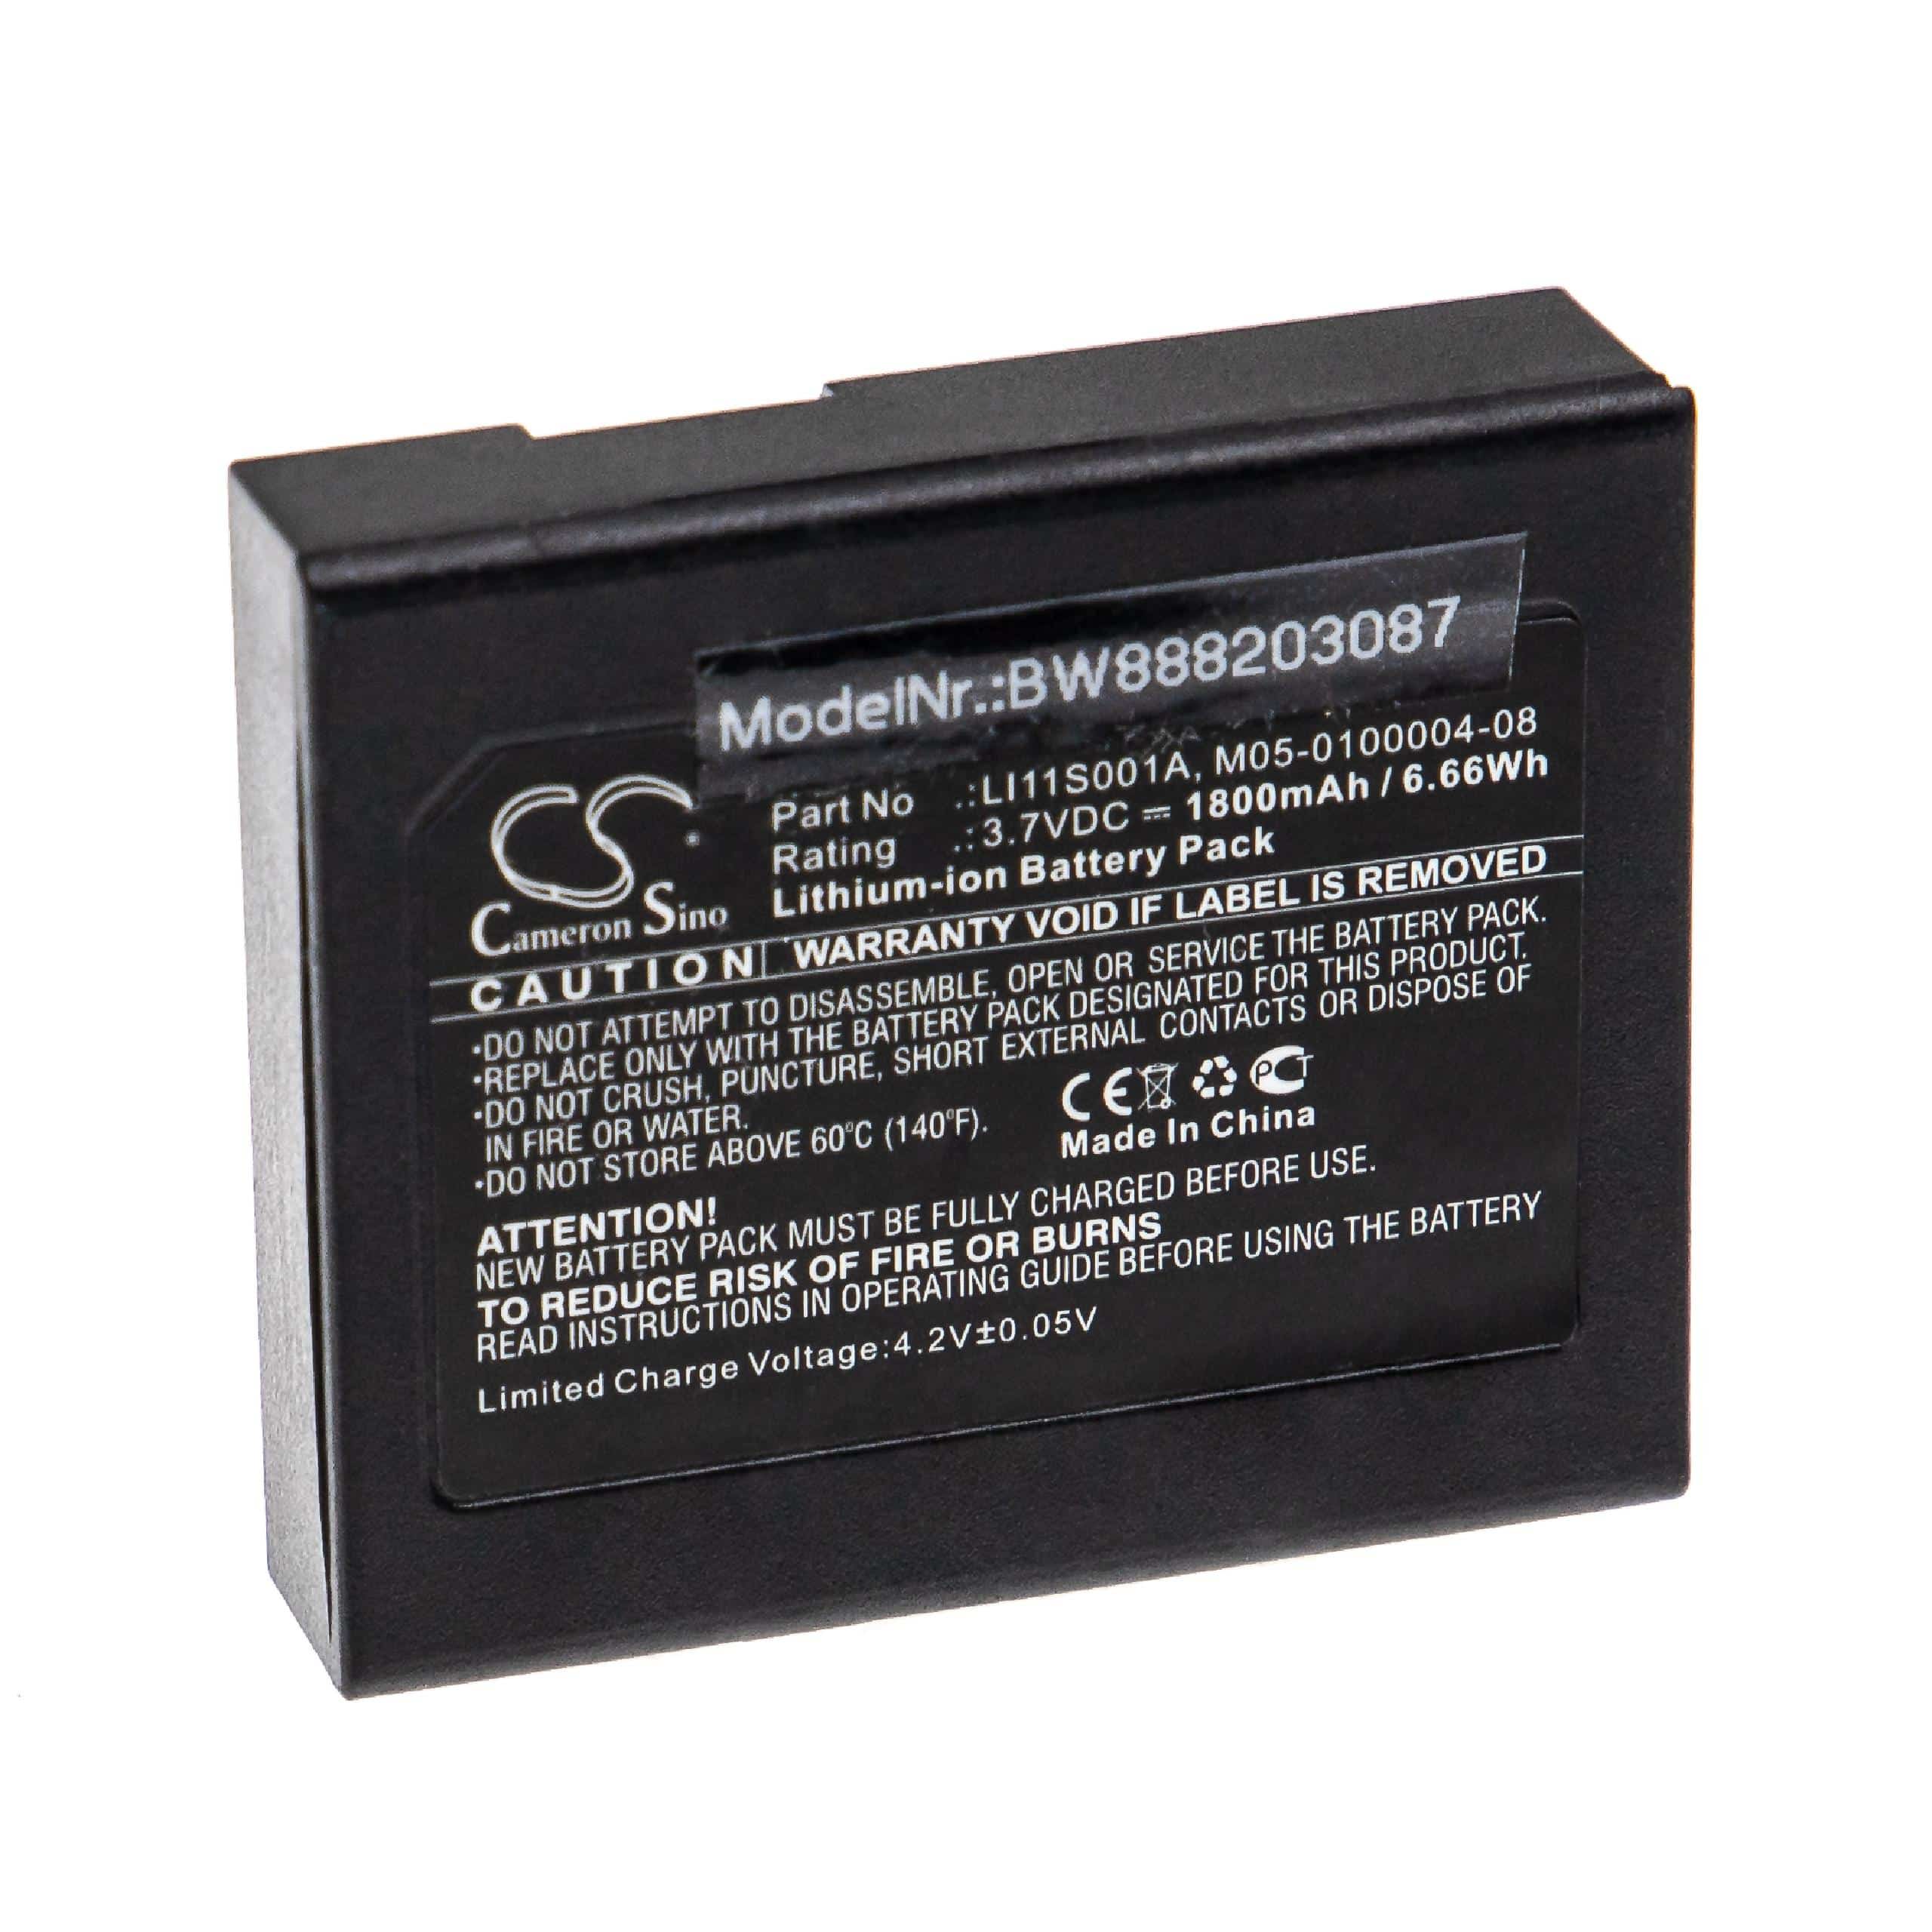 Batteria sostituisce Mindray 022-000008-00, LI11S001A per strumenti medici Mindray - 1800mAh 3,7V Li-Ion